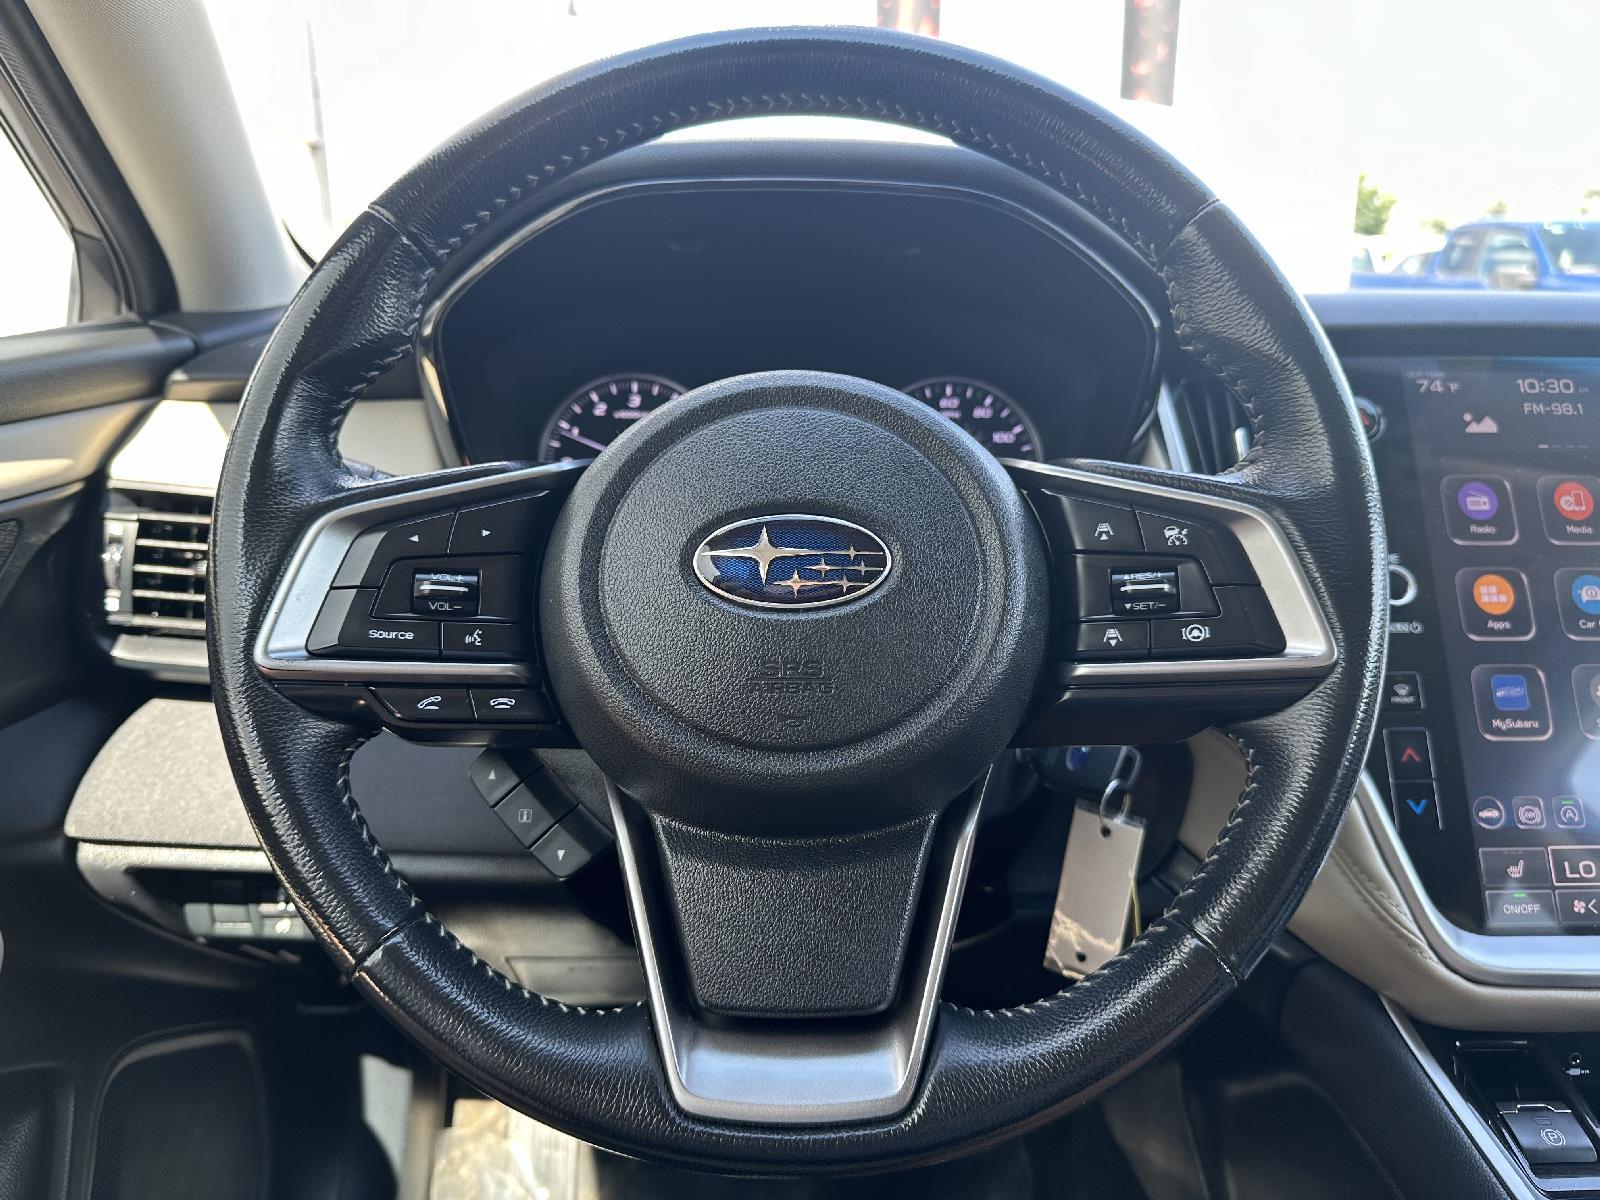 Used 2021 Subaru Outback Premium SUV for sale in Lincoln NE